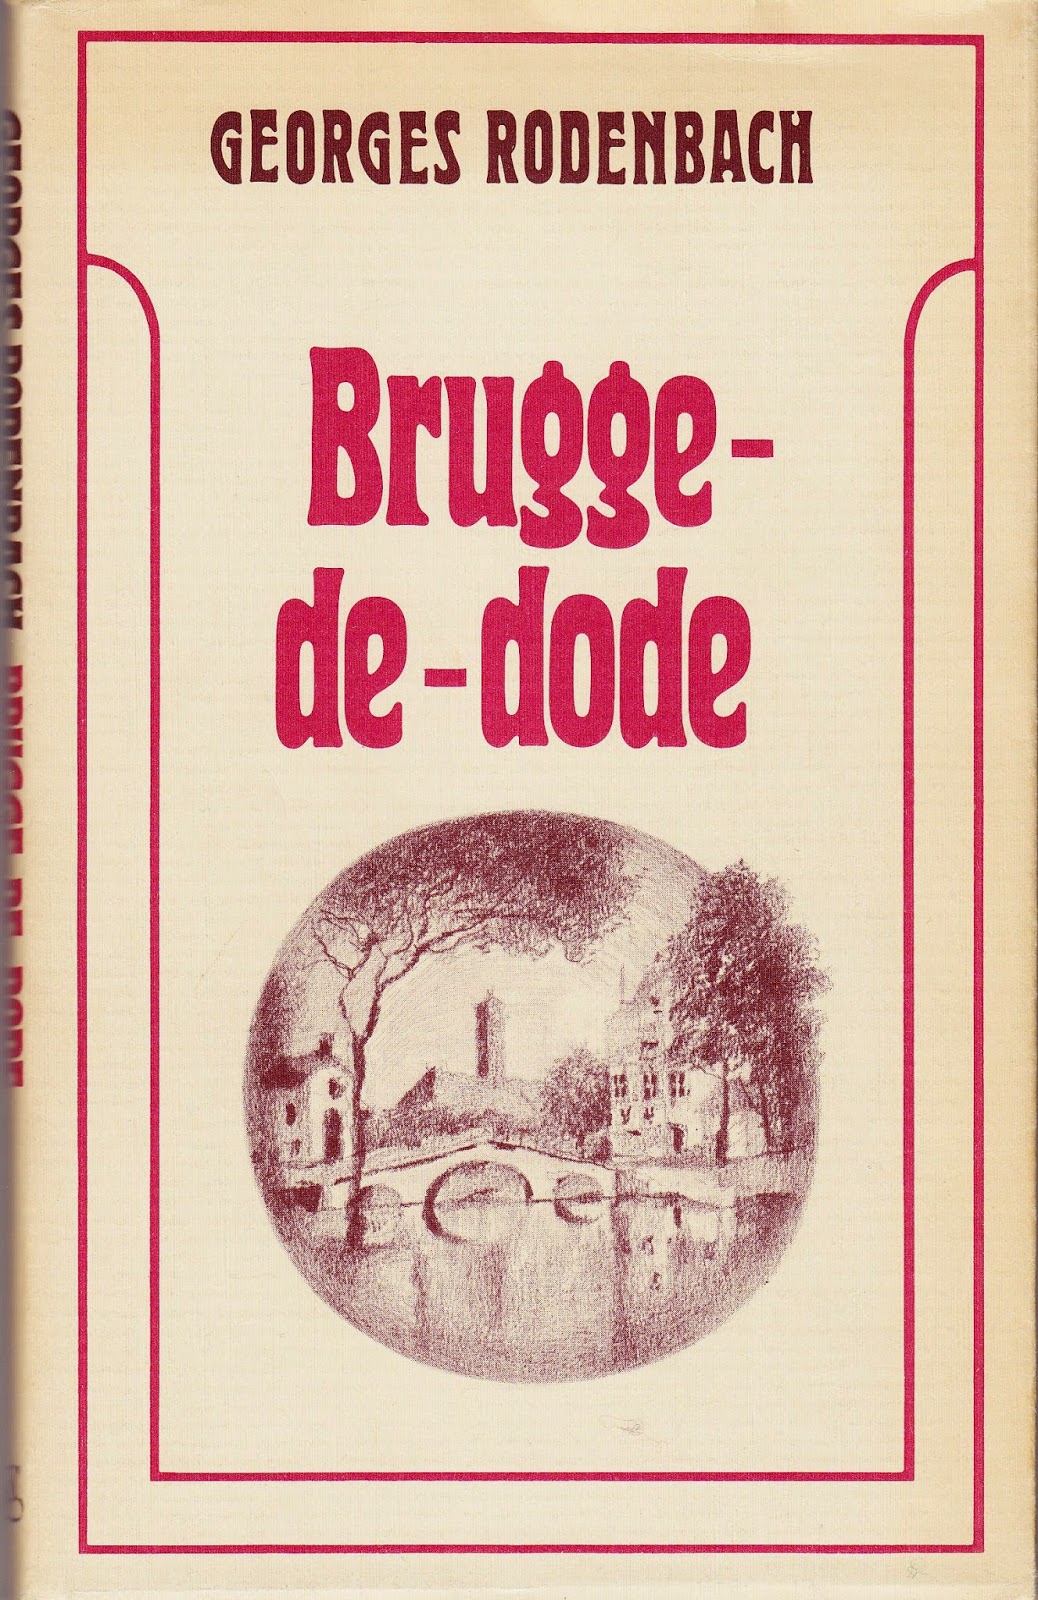 Brugge-de-dode